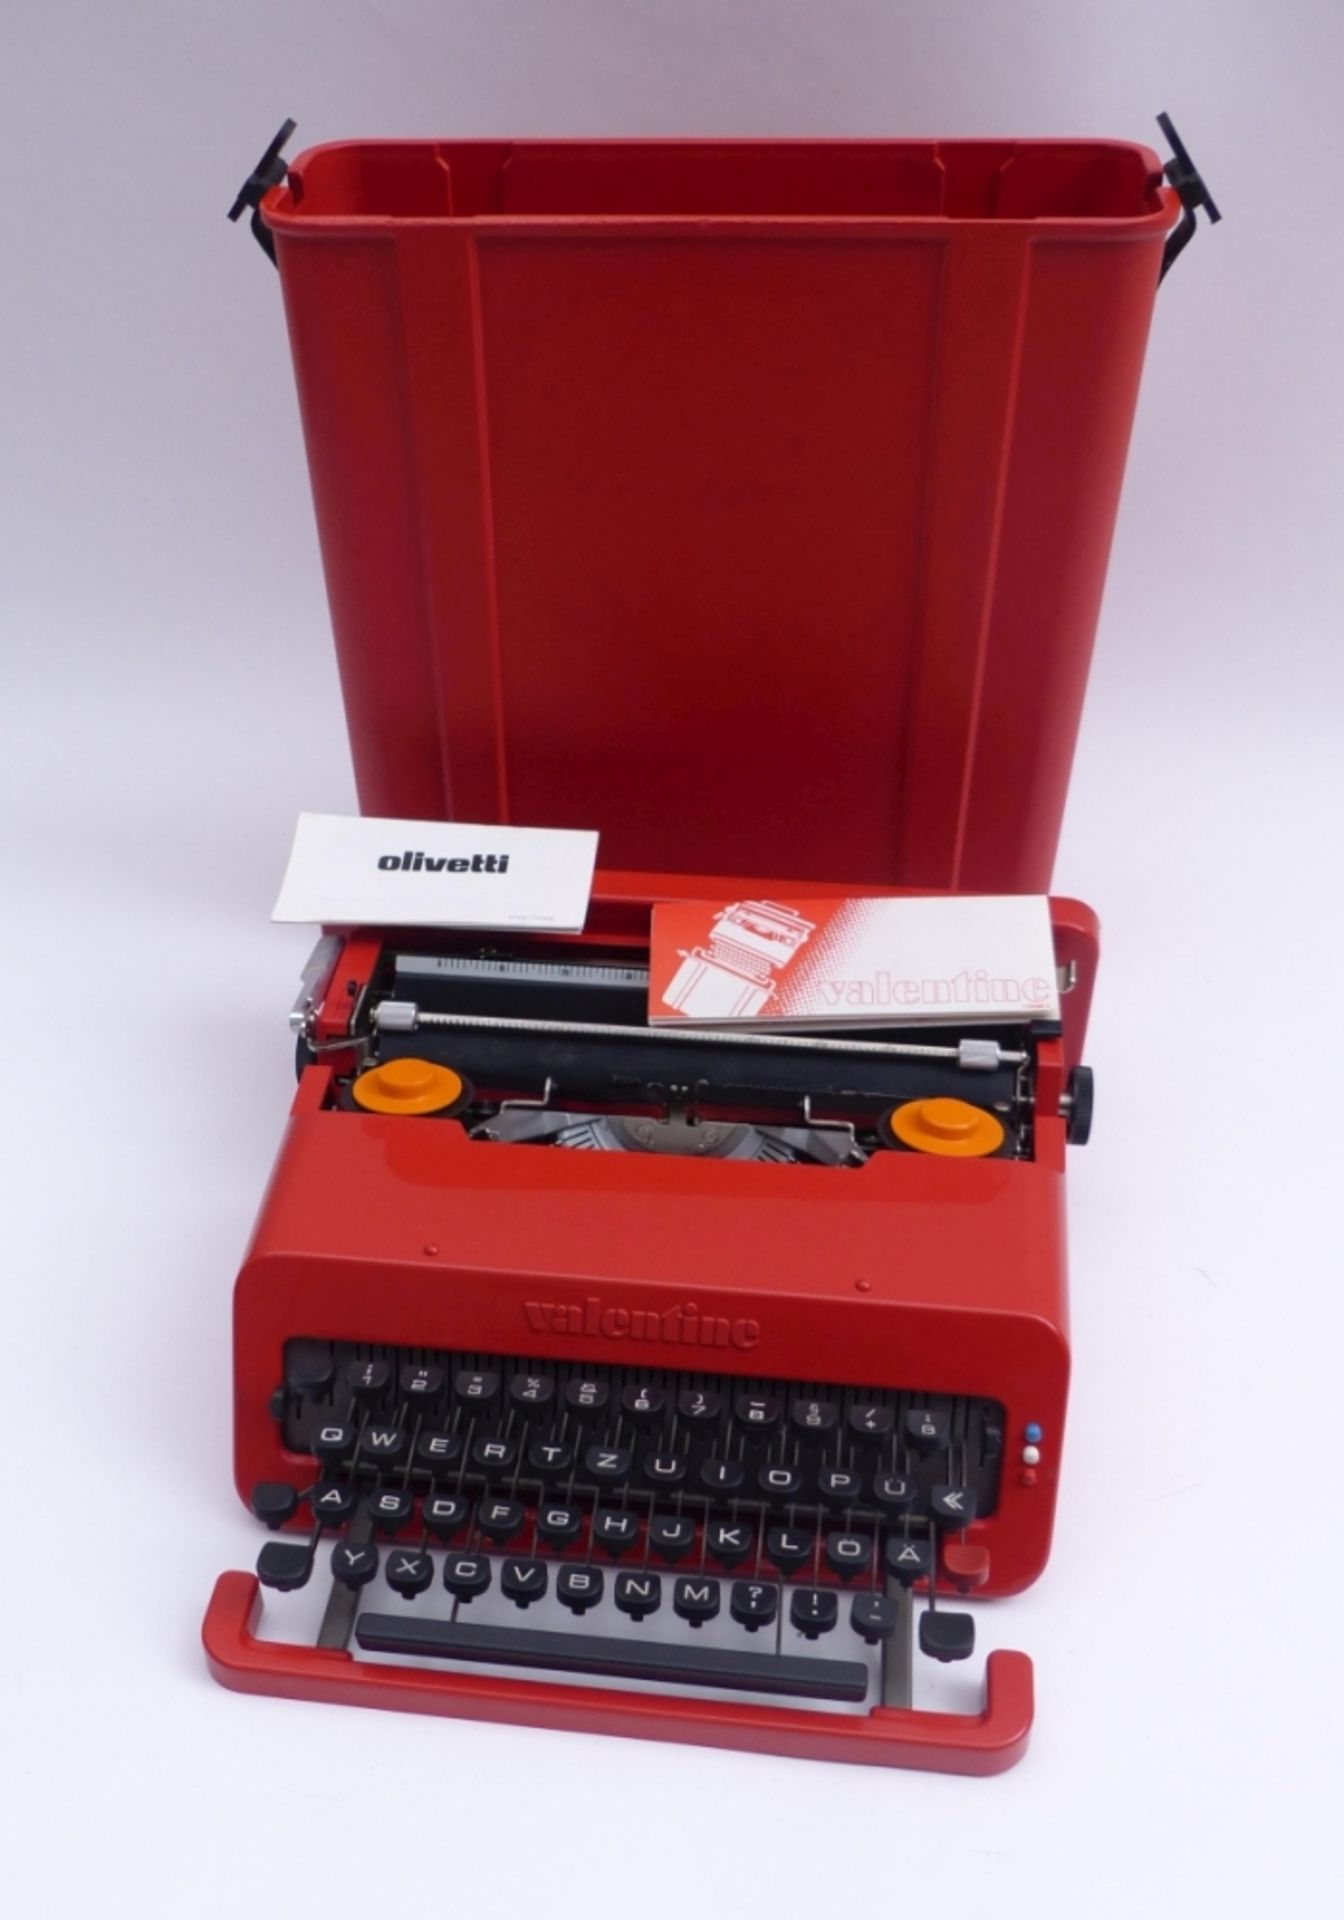 Olivetti-Reiseschreibmaschine "Valentine"Entwurf von Ettore SottsassHergestellt zwischen 1969- - Bild 5 aus 6